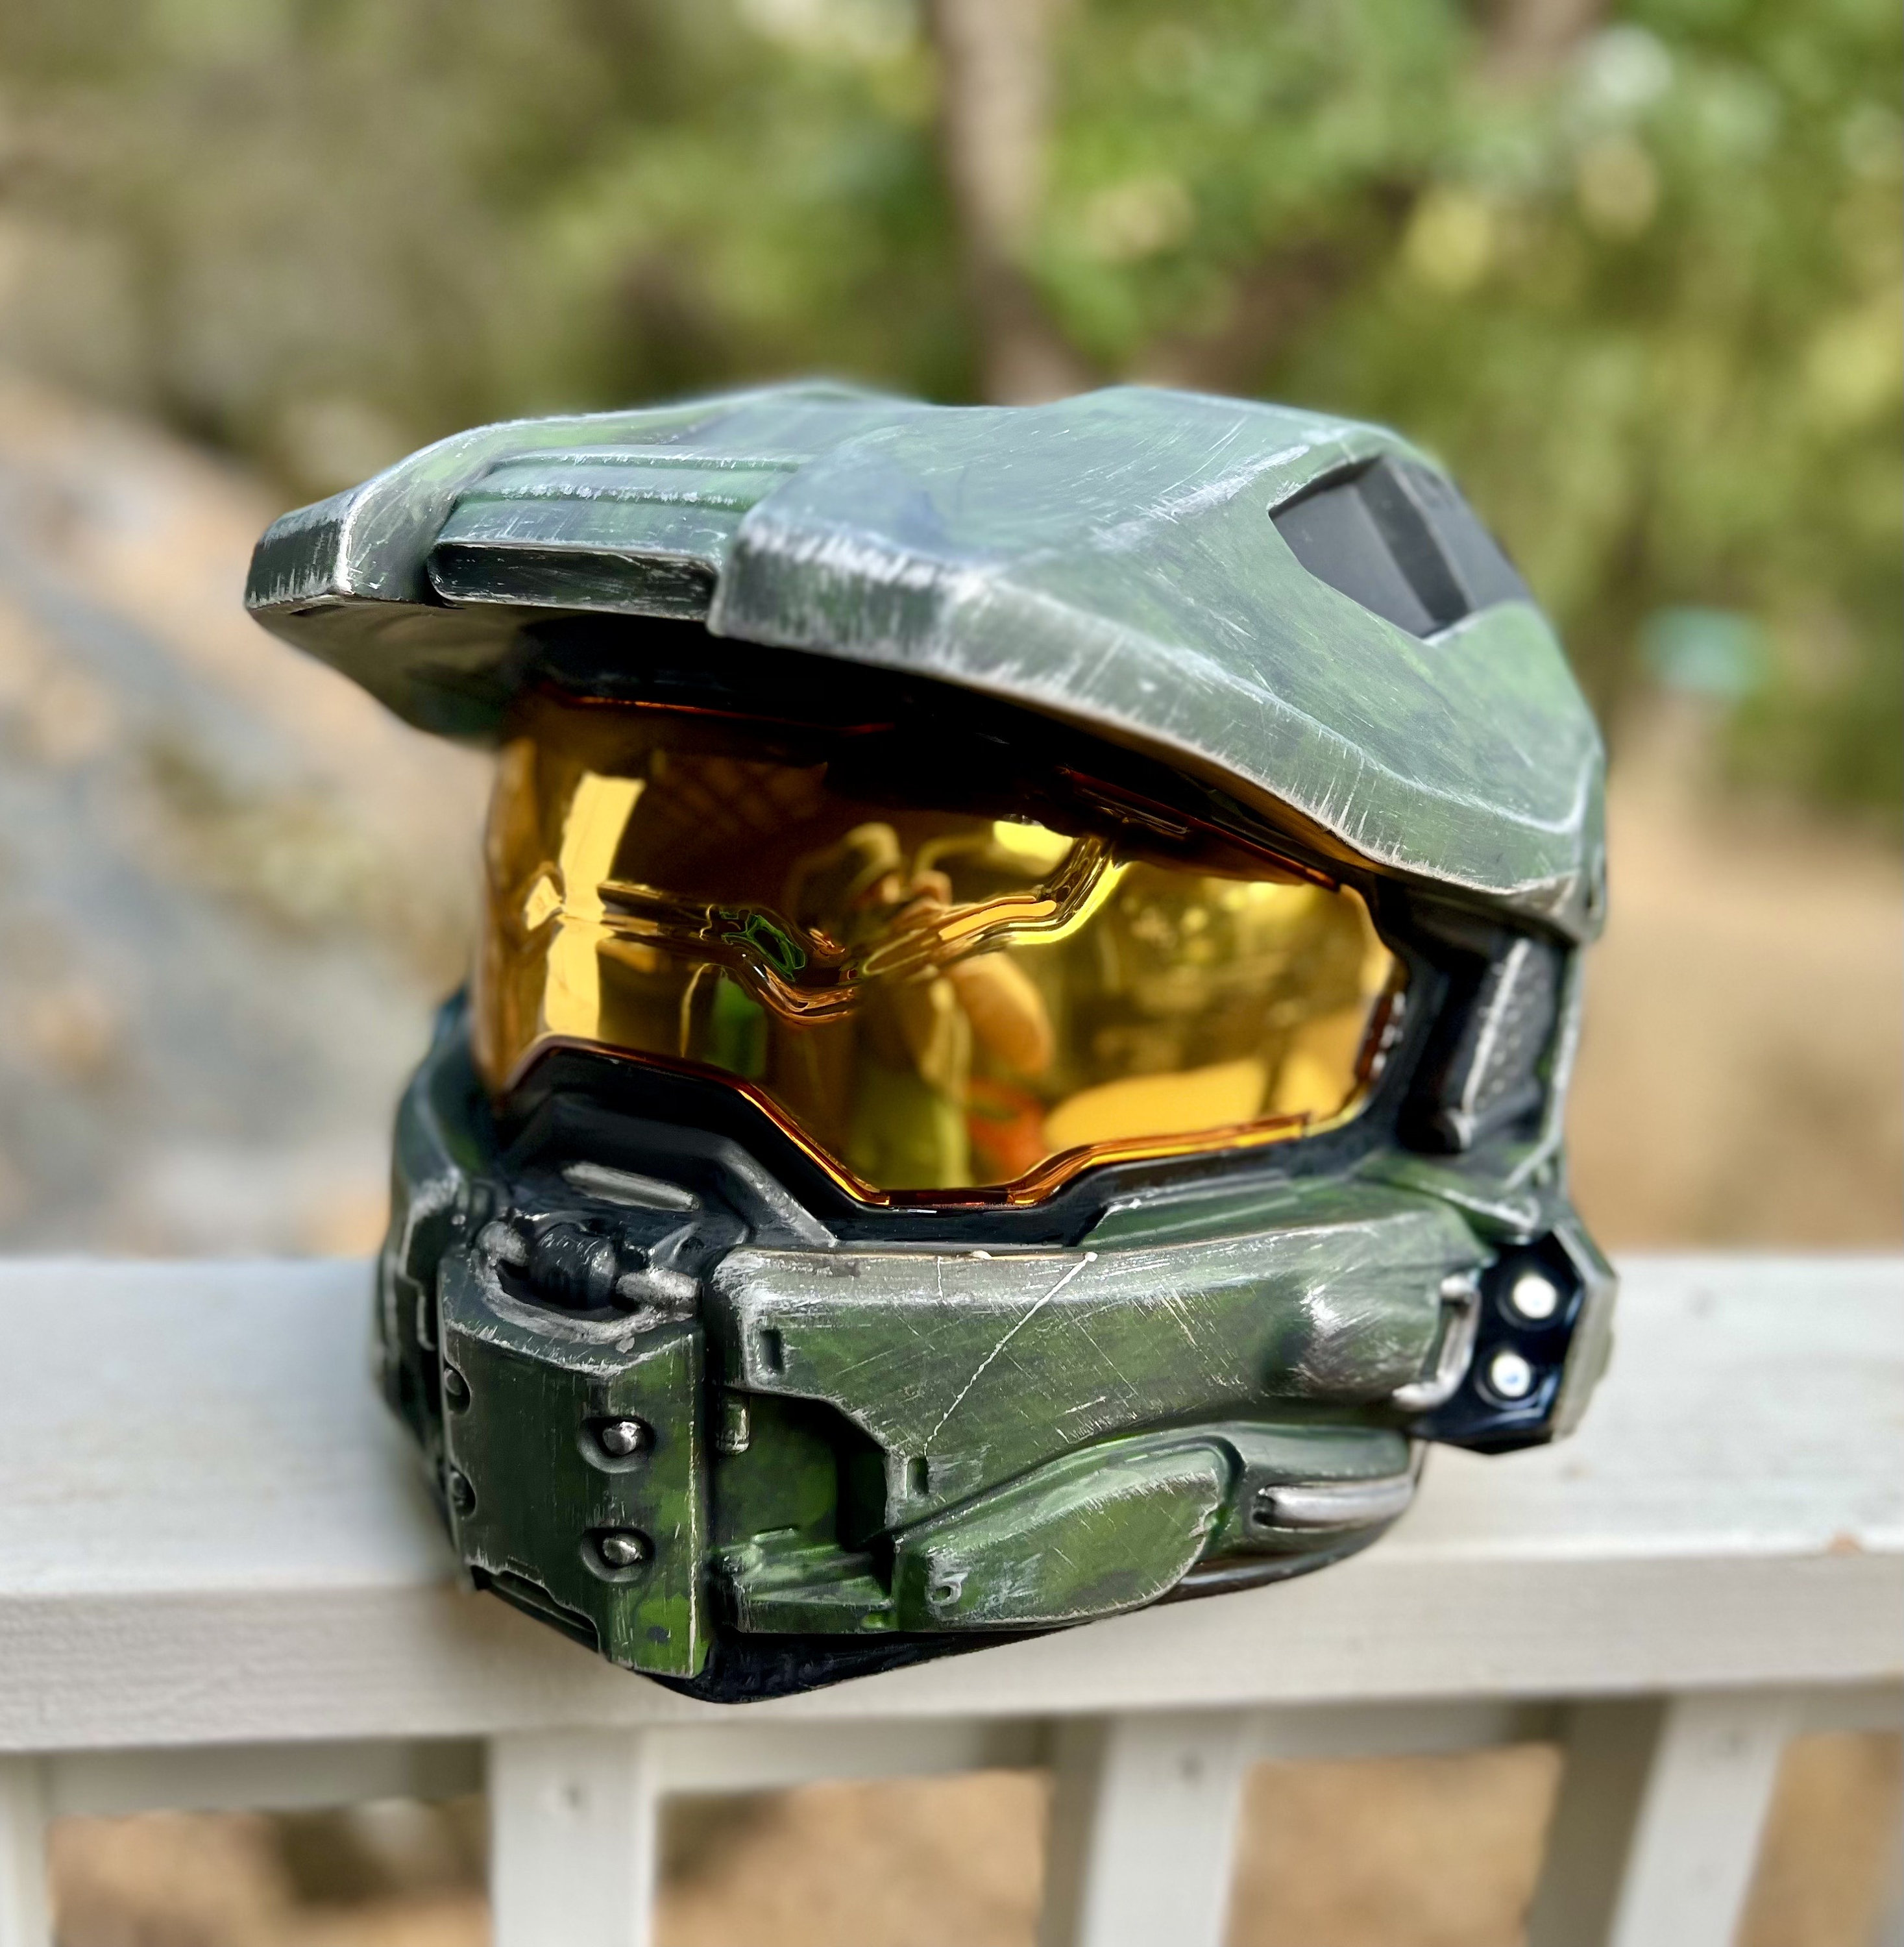 Si tienes moto y eres fan de Halo, este casco debe ser tuyo